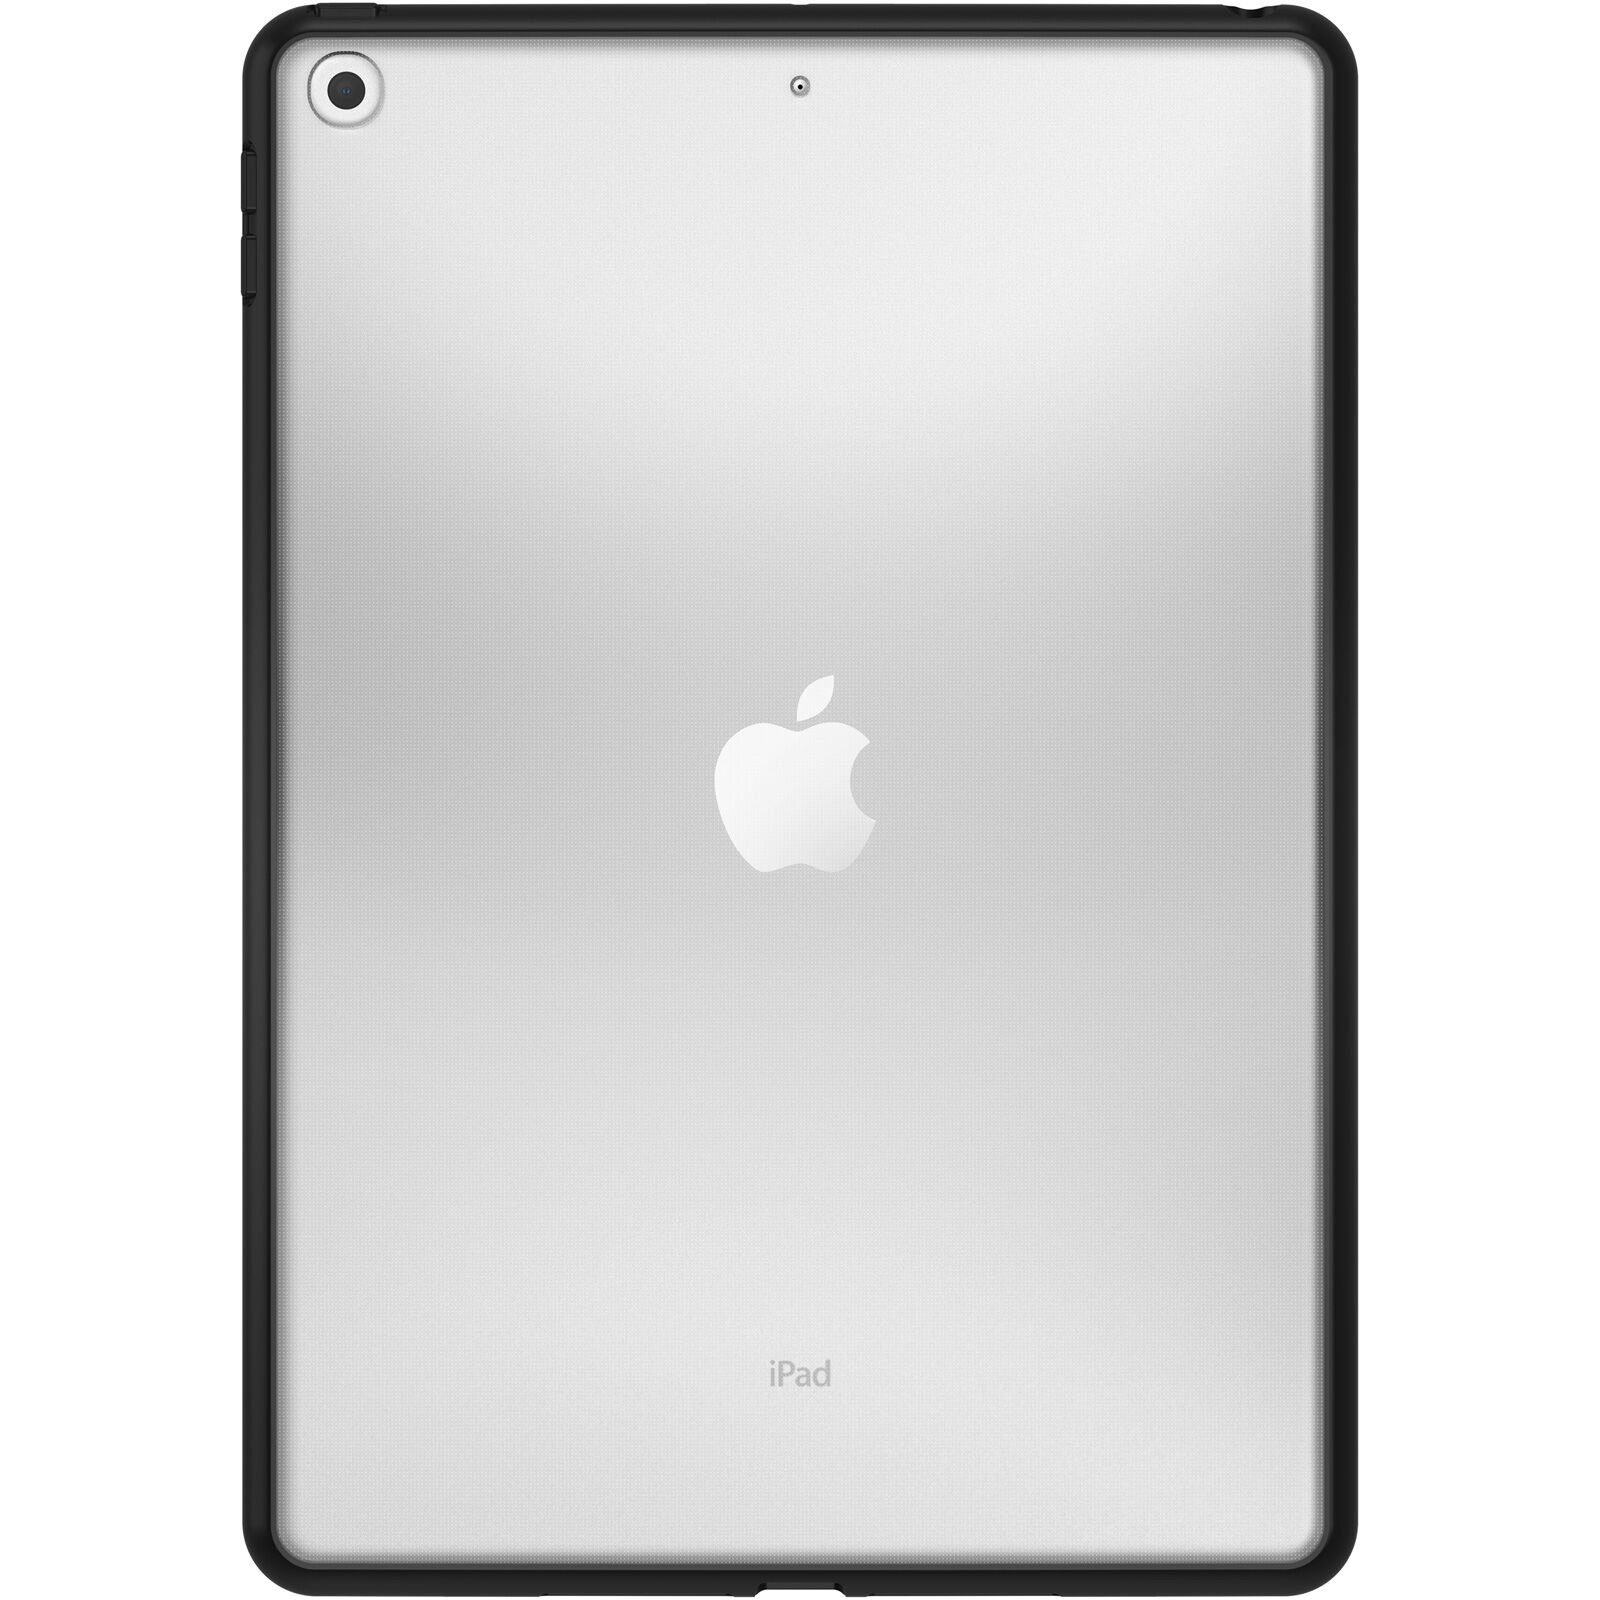 React Kuori iPad 10.2 8th Gen (2020) Black Crystal